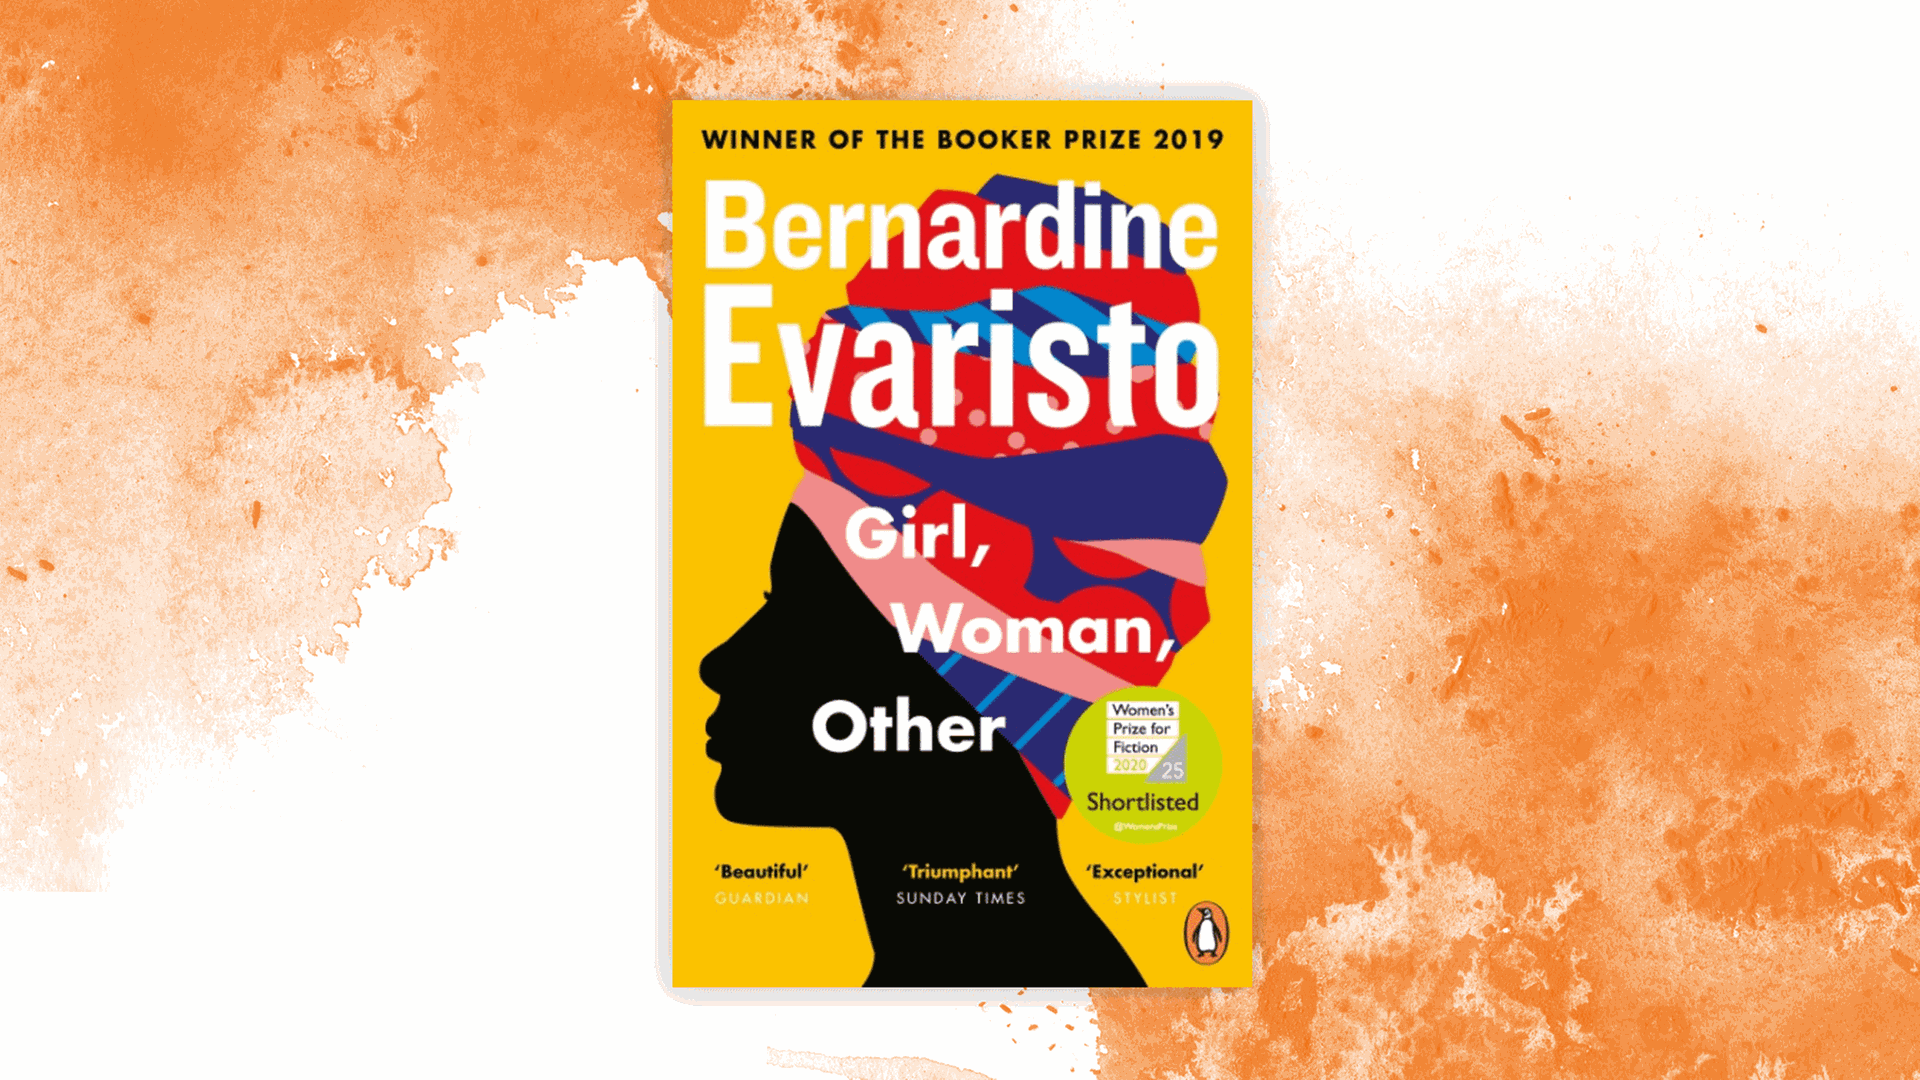 Cover des Buchs "Girl, Woman, Other" von Bernadine Evaristo.